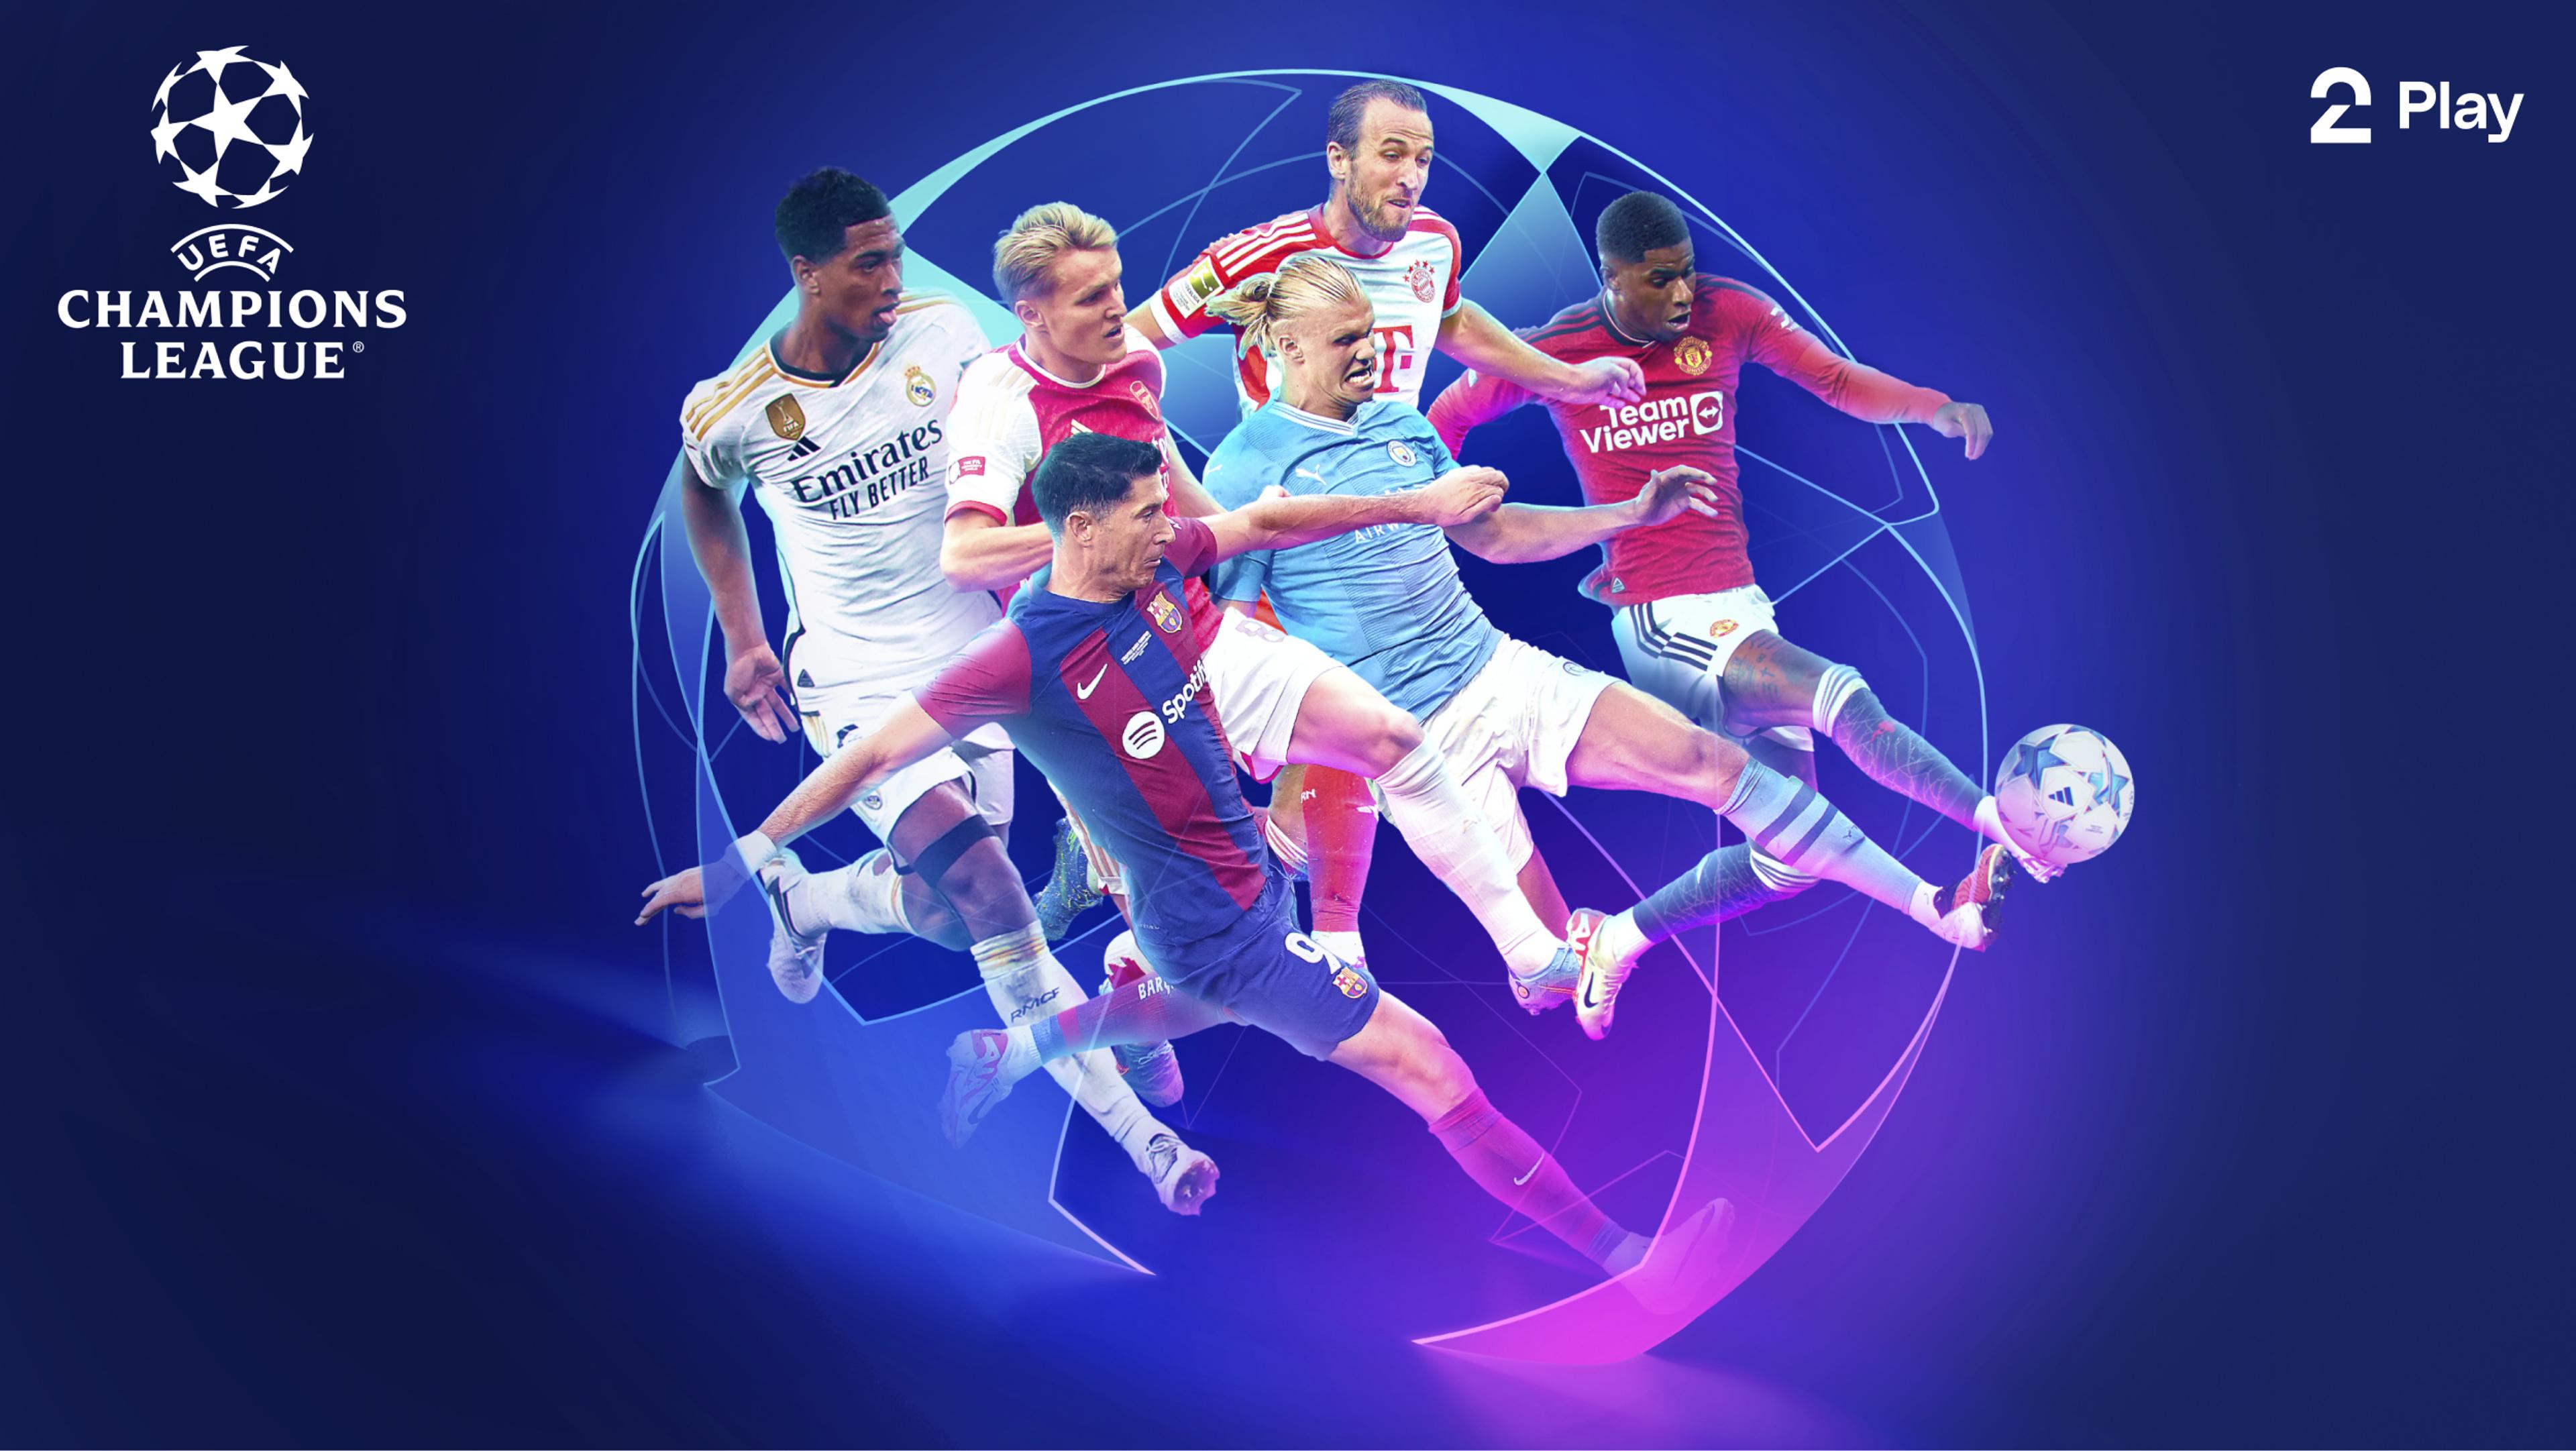 Seks fotballspillere – Jude Bellingham, Martin Ødegaard, Robert Lewandowski, Erling Braut Haaland, Harry Kane, Marcus Rashford – kjemper om ballen med Champions League-logo på lilla bakgrunn.